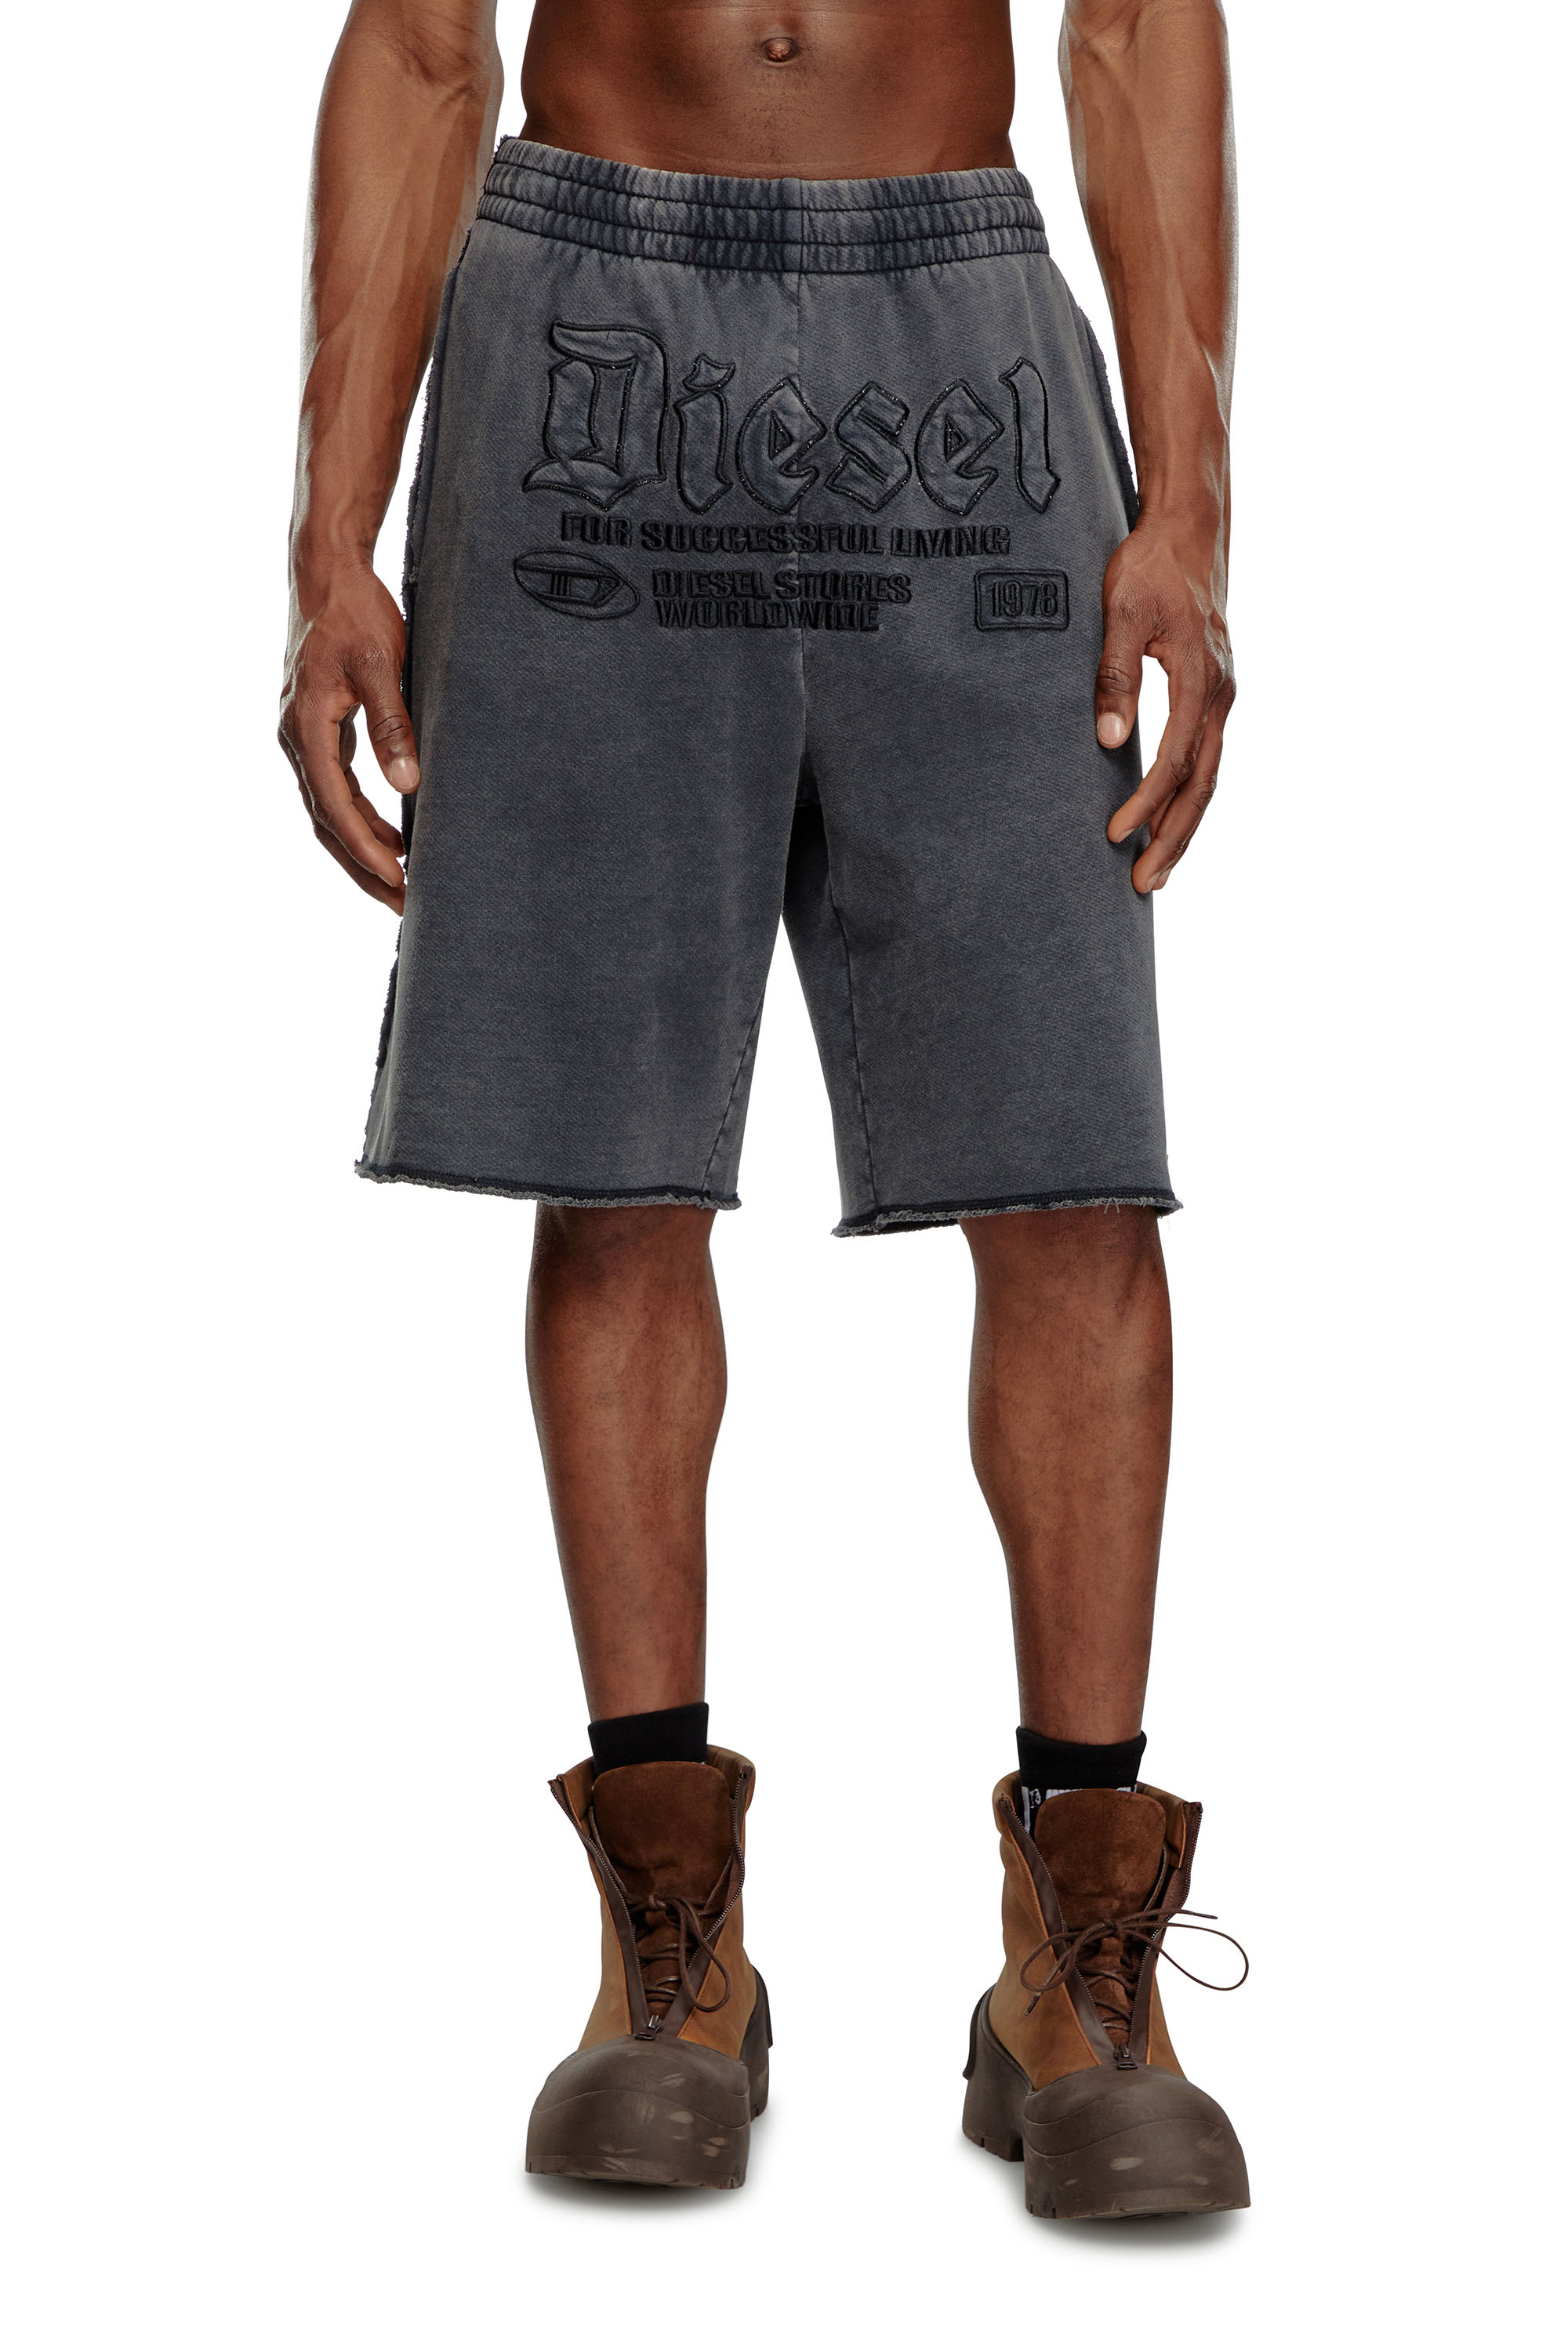 Diesel - P-RAWMARSHY, Hombre Pantalones cortos deportivos con bordado Diesel in Negro - Image 1